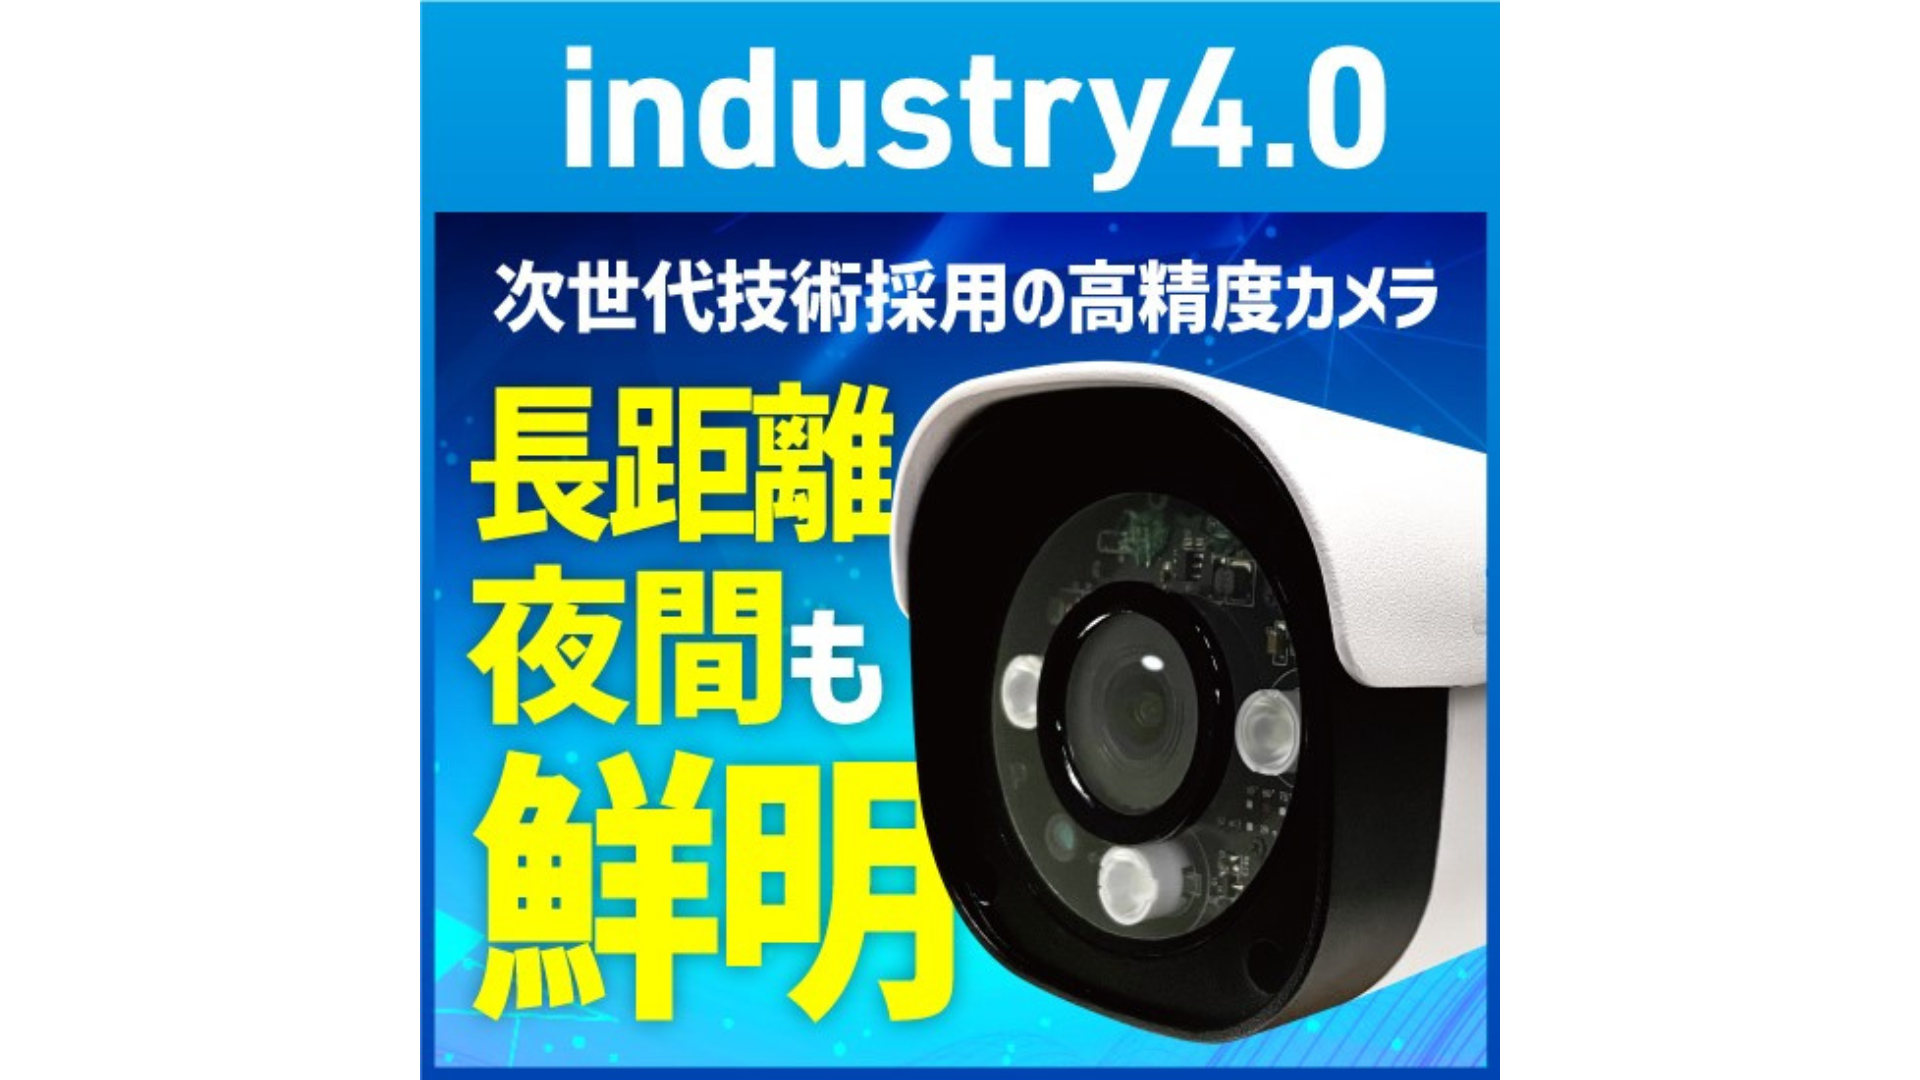 【industry4.0】DTV方式 次世代高精細 防犯カメラ